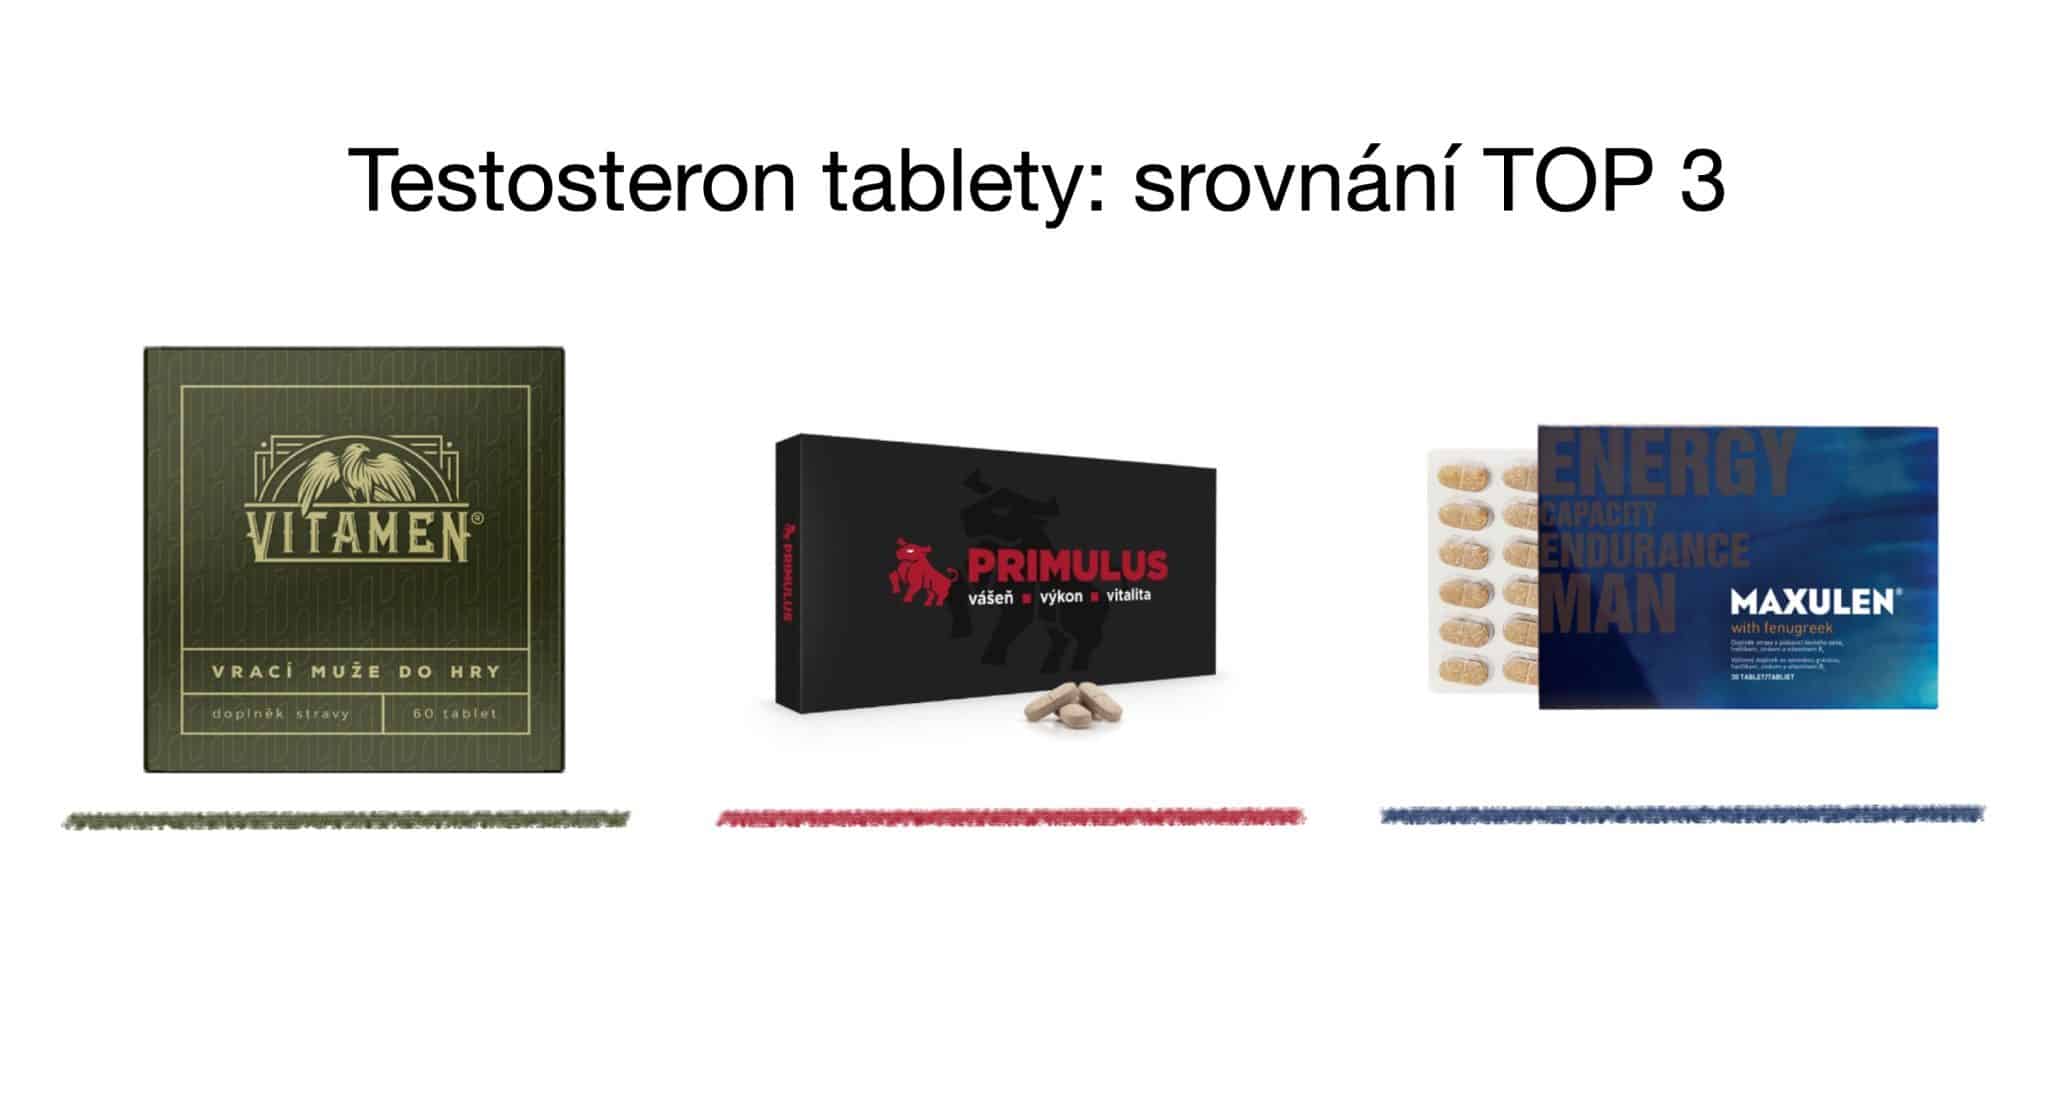 Testosteron tablety TOP 3 srovnání – vitamíny pro muže [recenze] 1